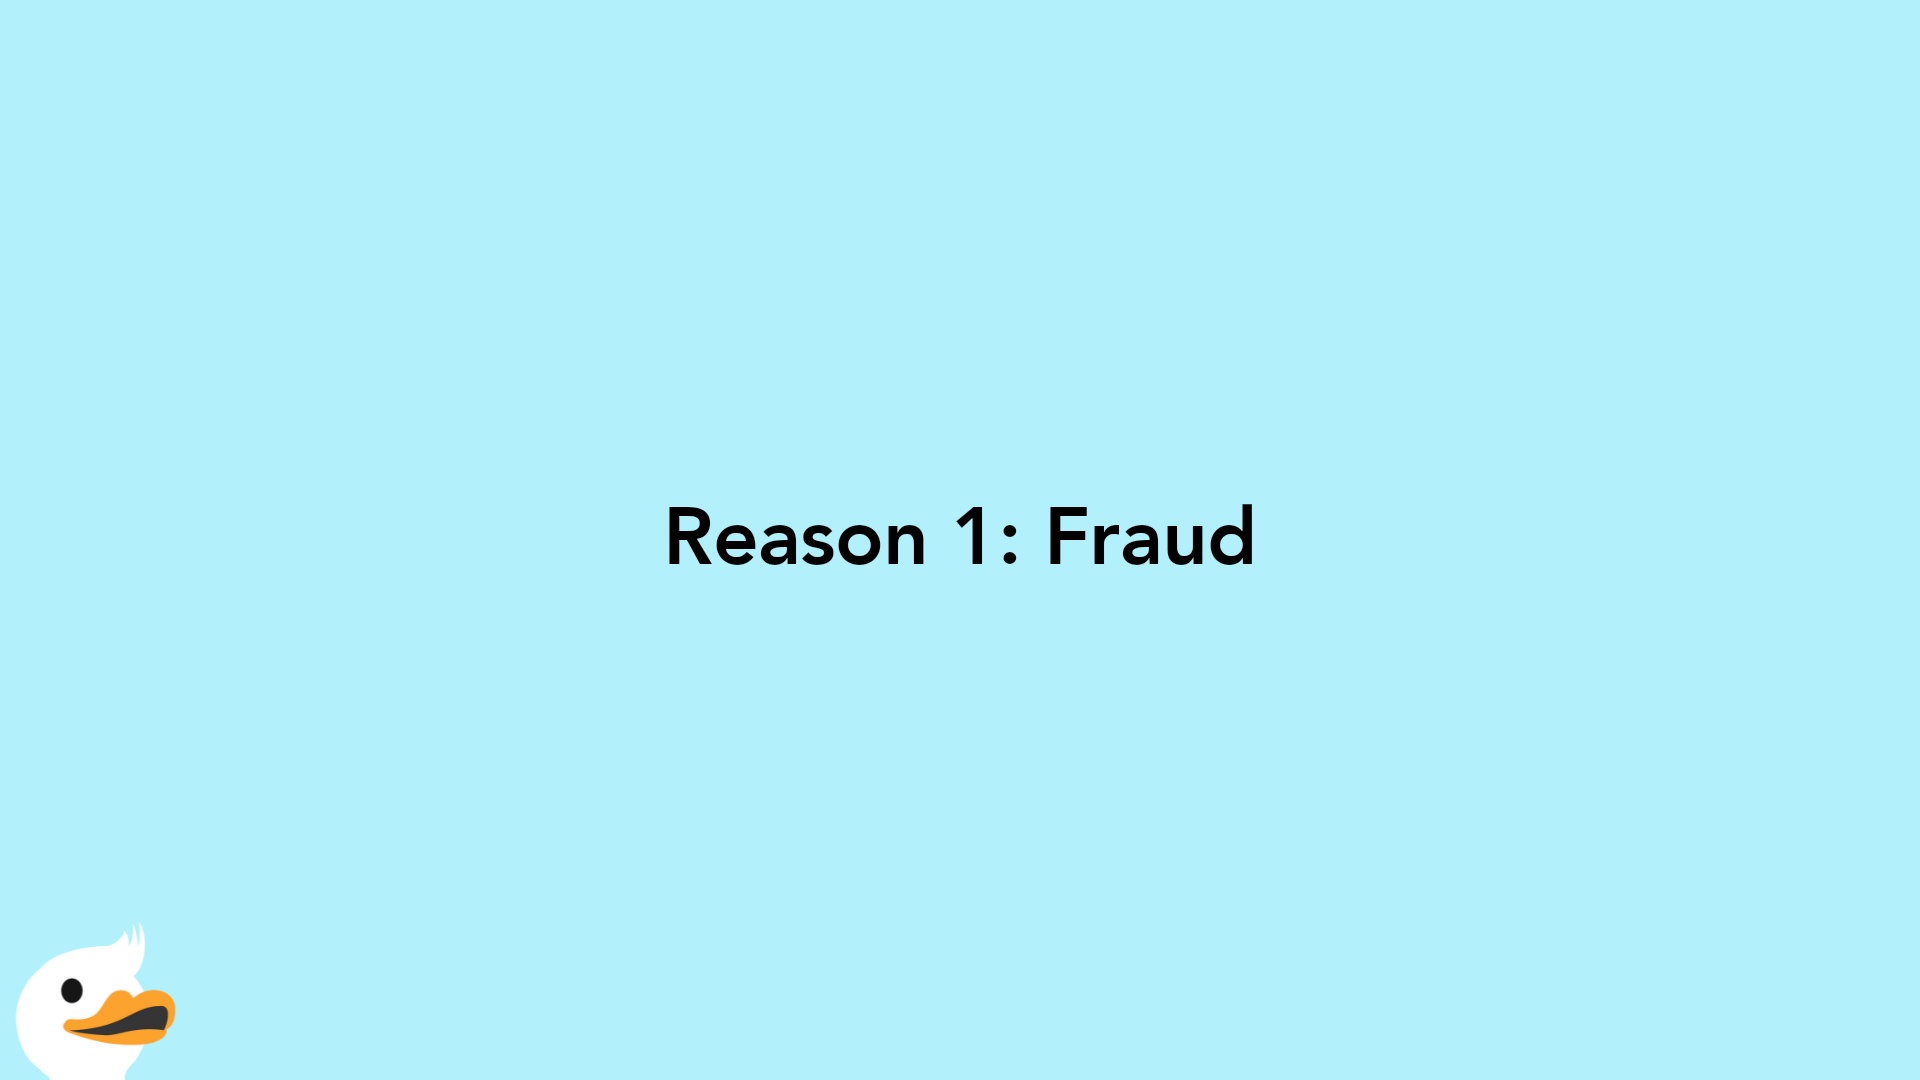 Reason 1: Fraud